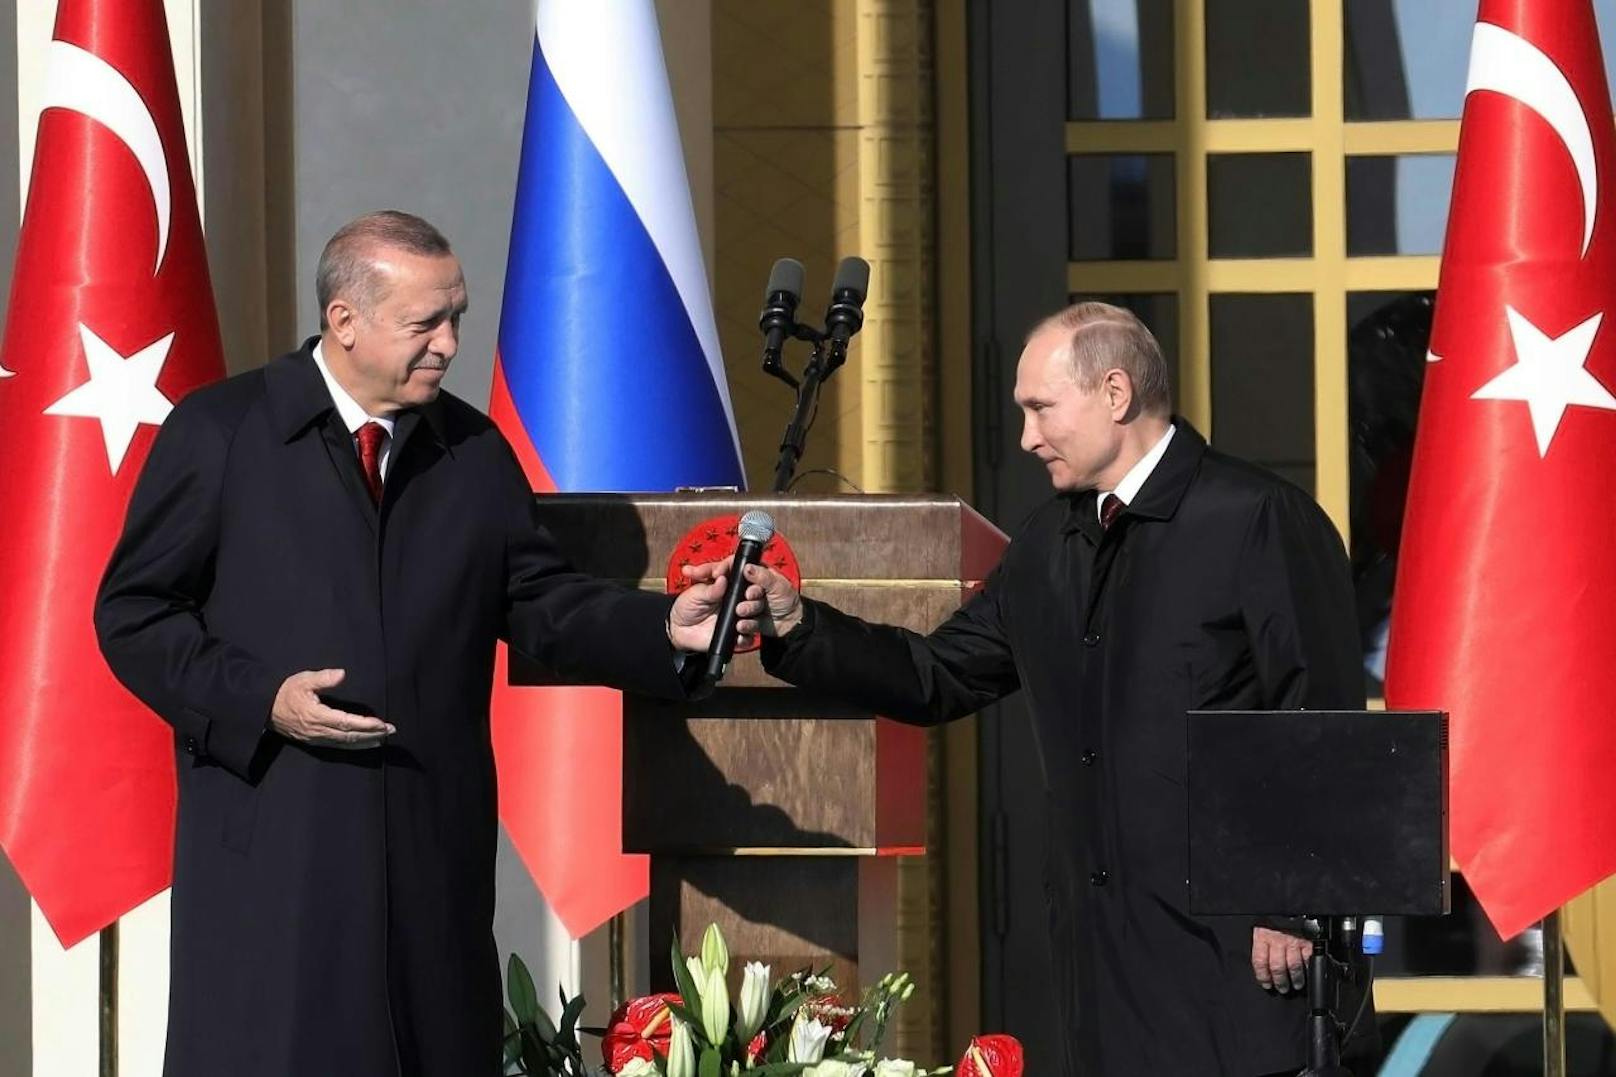 Auch im Verteidigungsbereich wollen die beiden Staaten ihre Zusammenarbeit ausbauen. Putin sagte, Russland wolle sein Raketenabwehrsystem S400 früher als bislang geplant an die Türkei liefern.